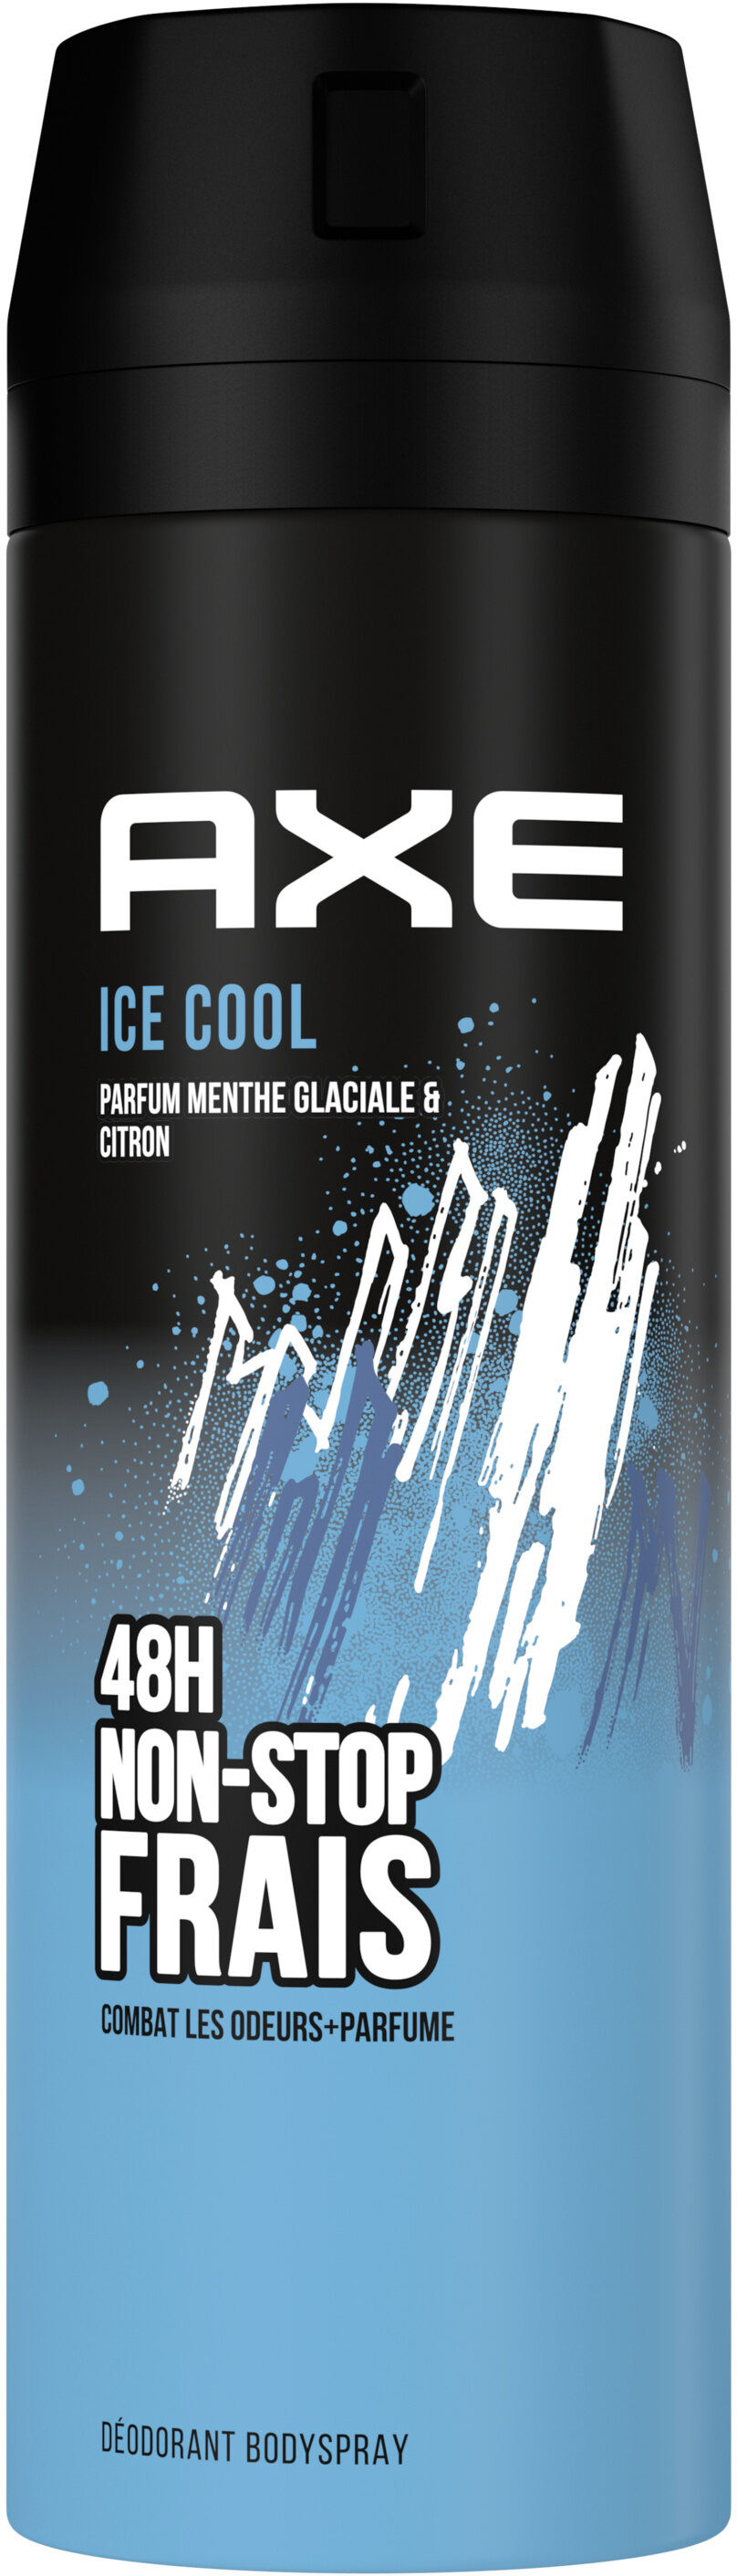 Axe Déodorant Homme Bodyspray Ice Cool 48h Non-Stop Frais 200ml - Product - fr